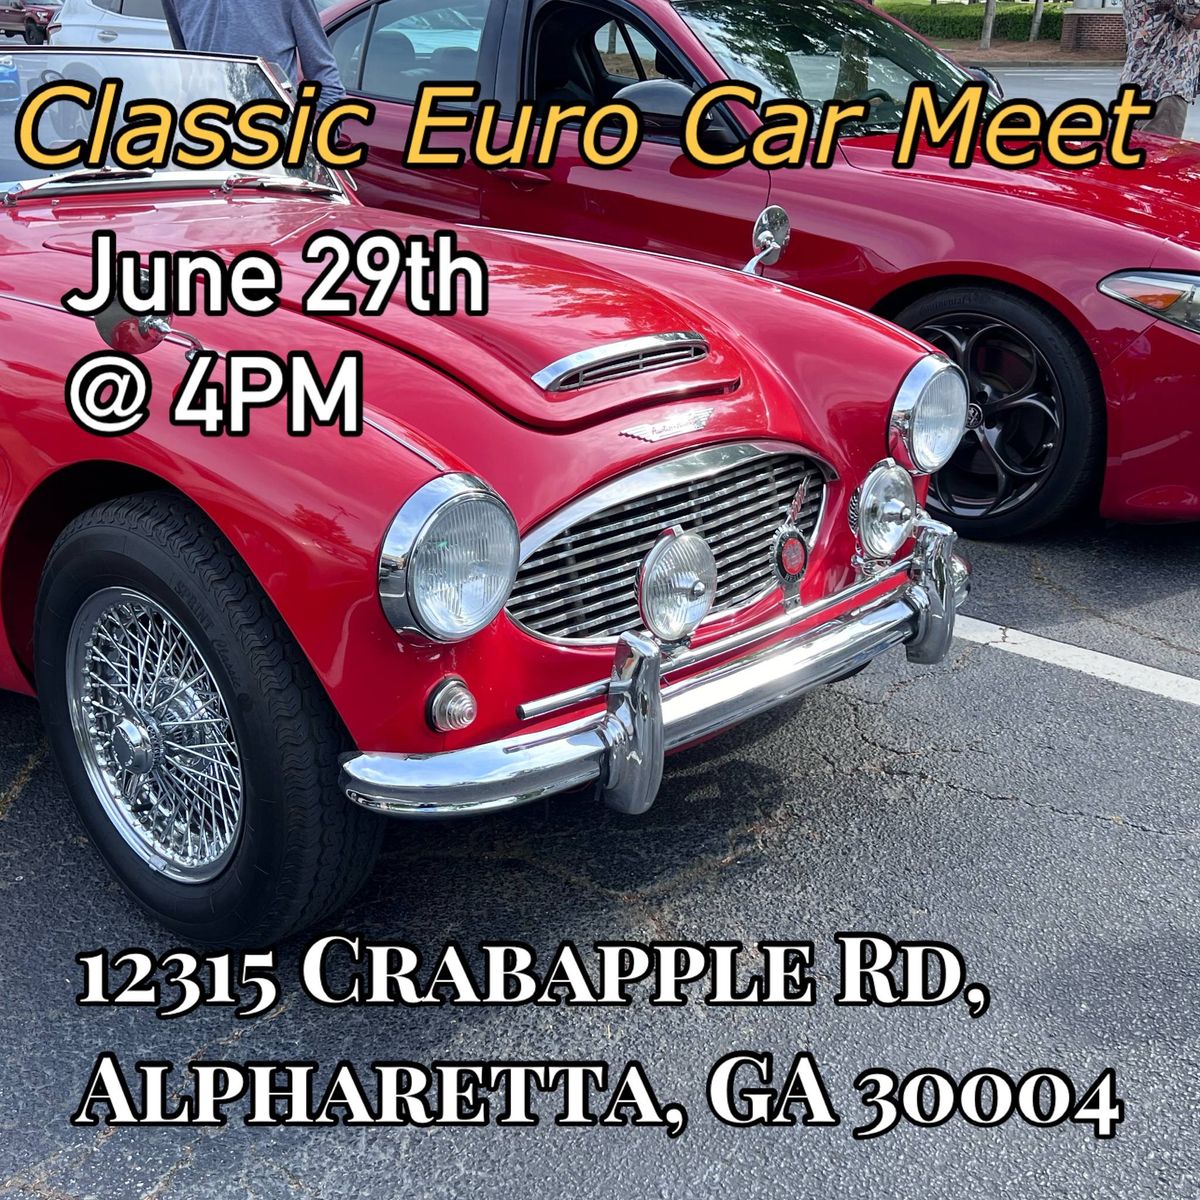 Classic Euro Car Meet